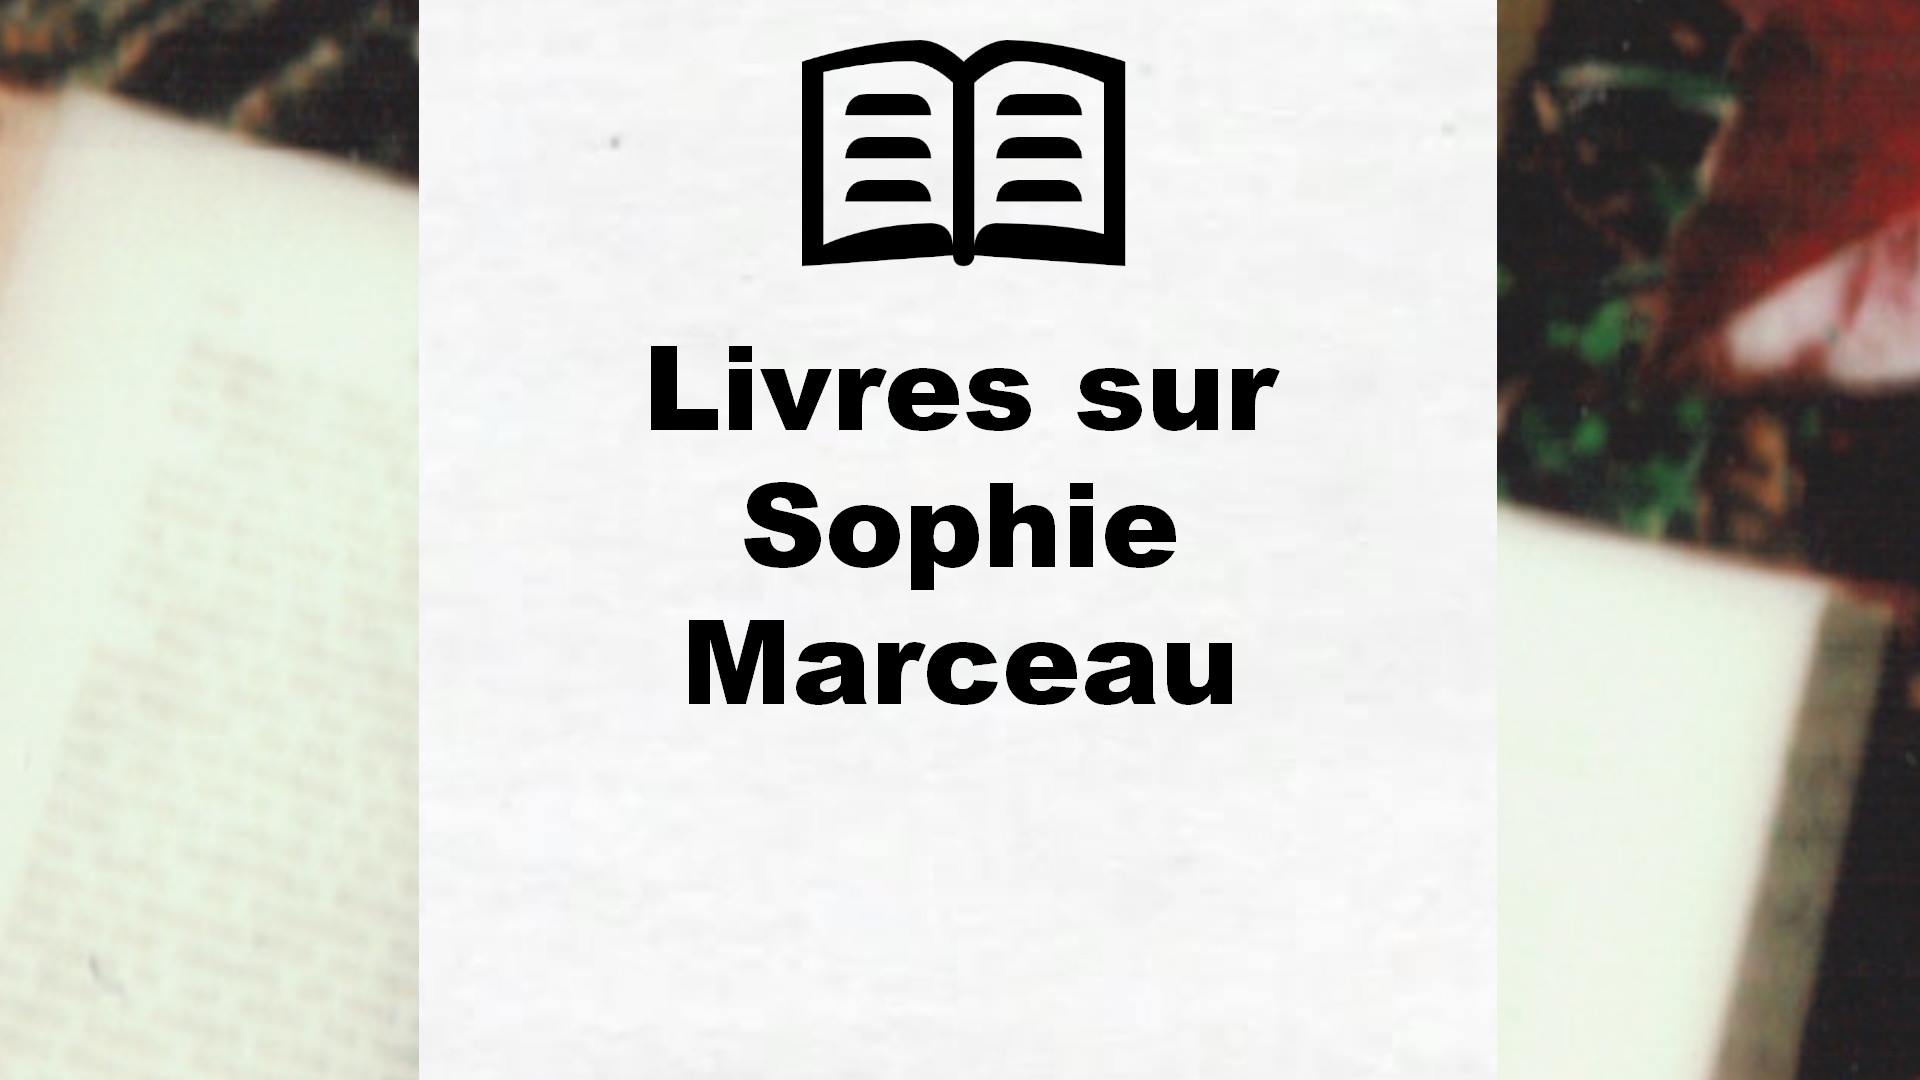 Livres sur Sophie Marceau